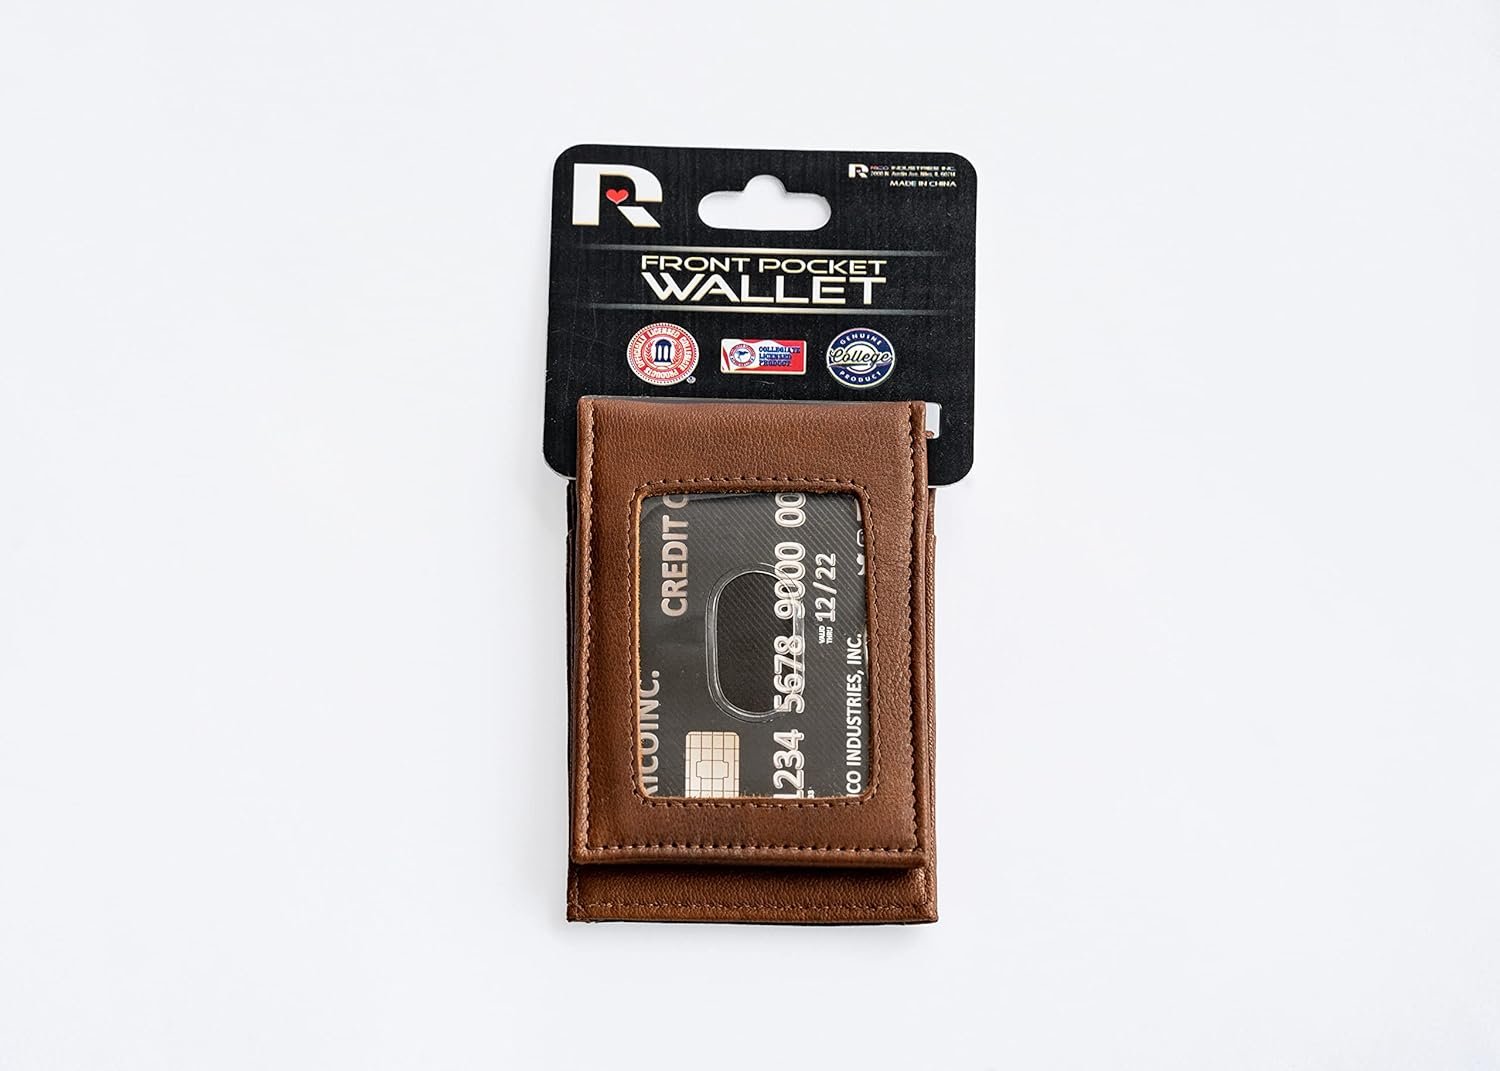 University of Oregon Ducks Premium Black Leather Wallet, Front Pocket Magnetic Money Clip, Laser Engraved, Vegan